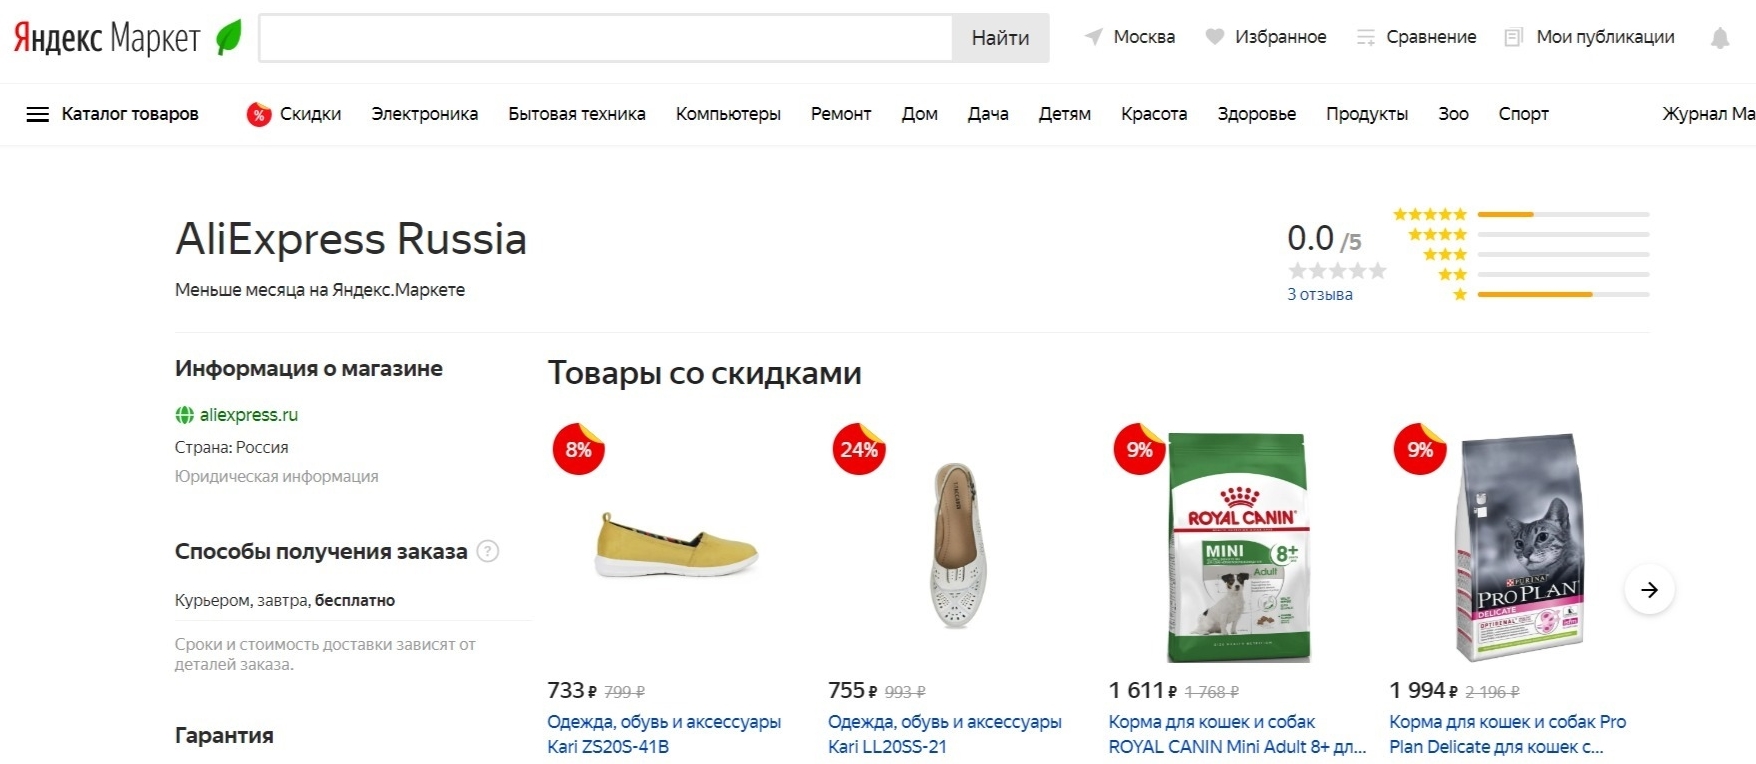 Яндекс Маркет каталог товаров